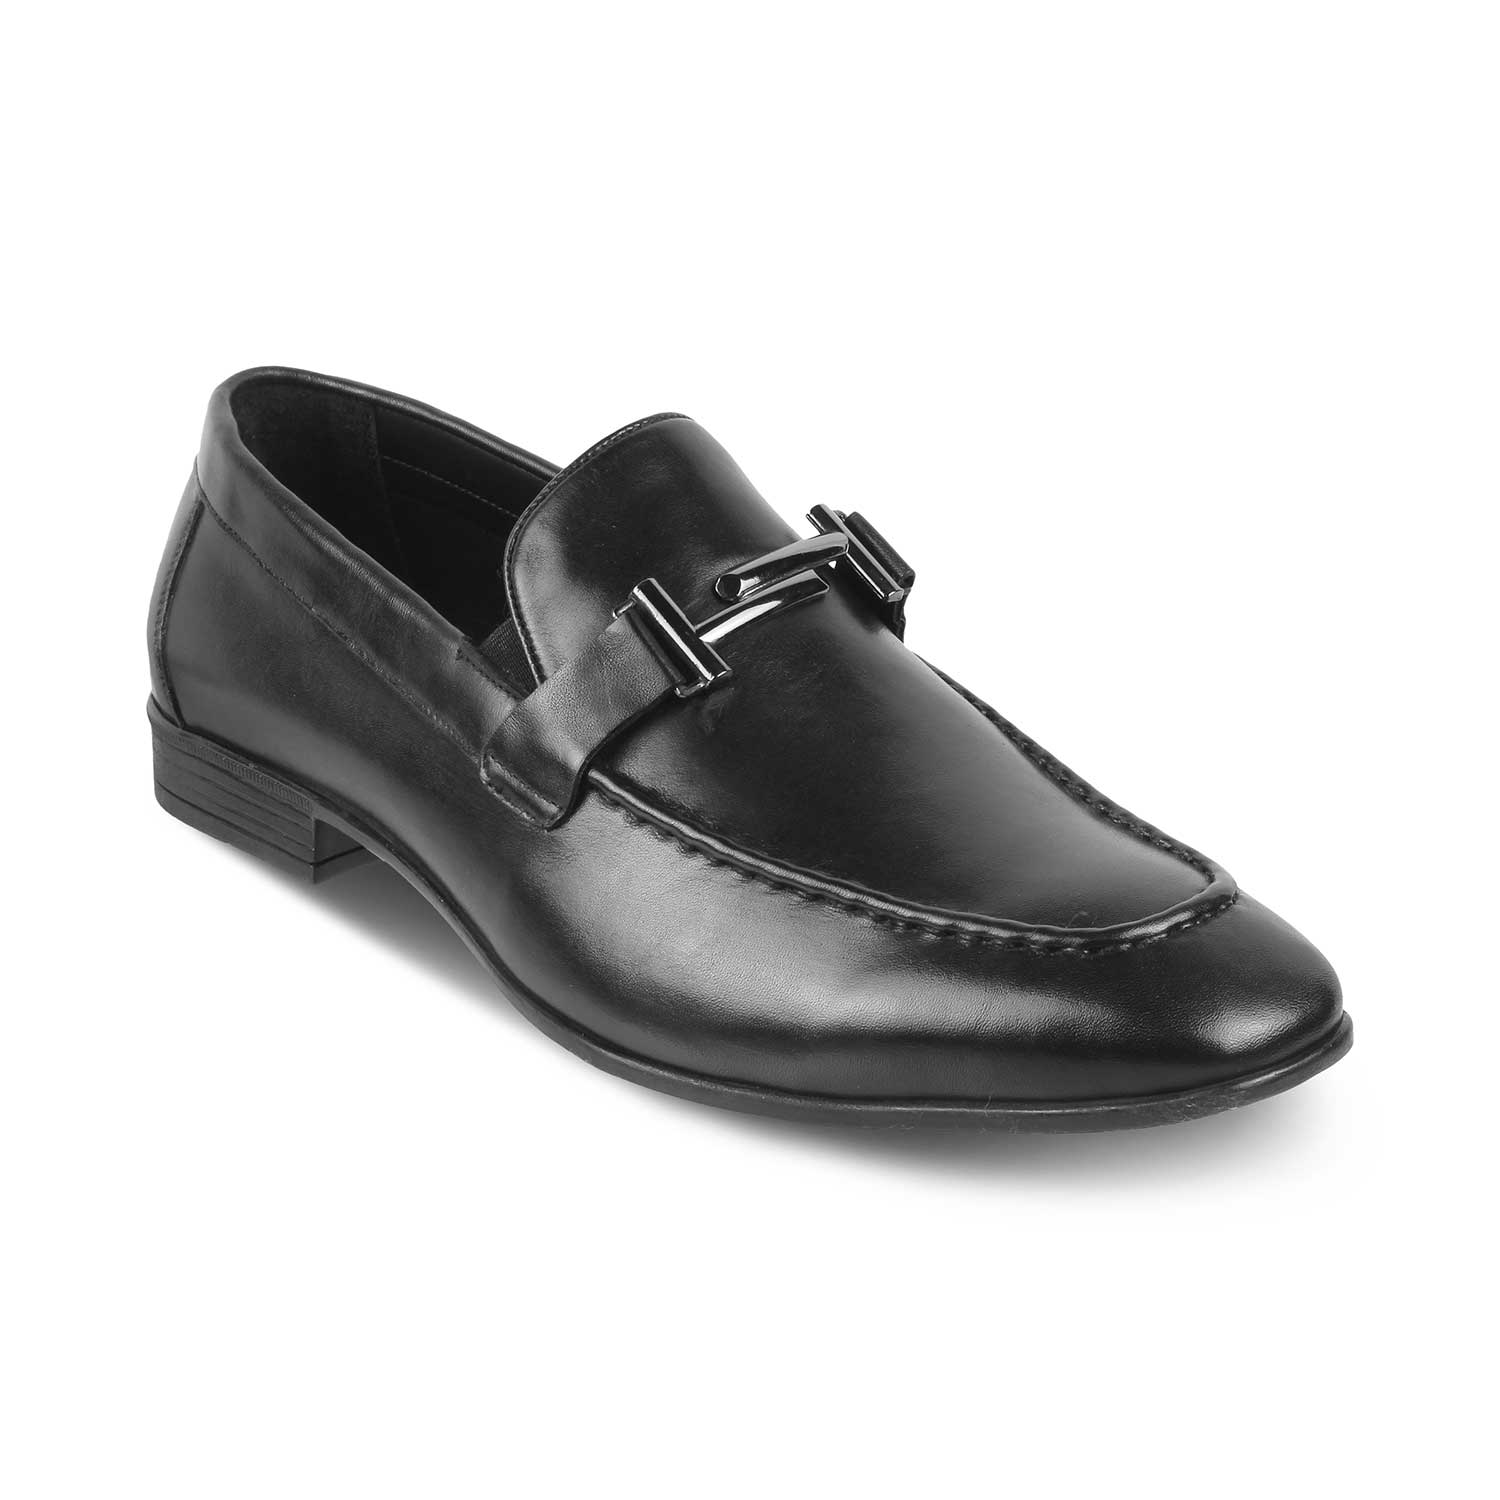 Salperton Black Men's Leather Loafers Online at Tresmode.com